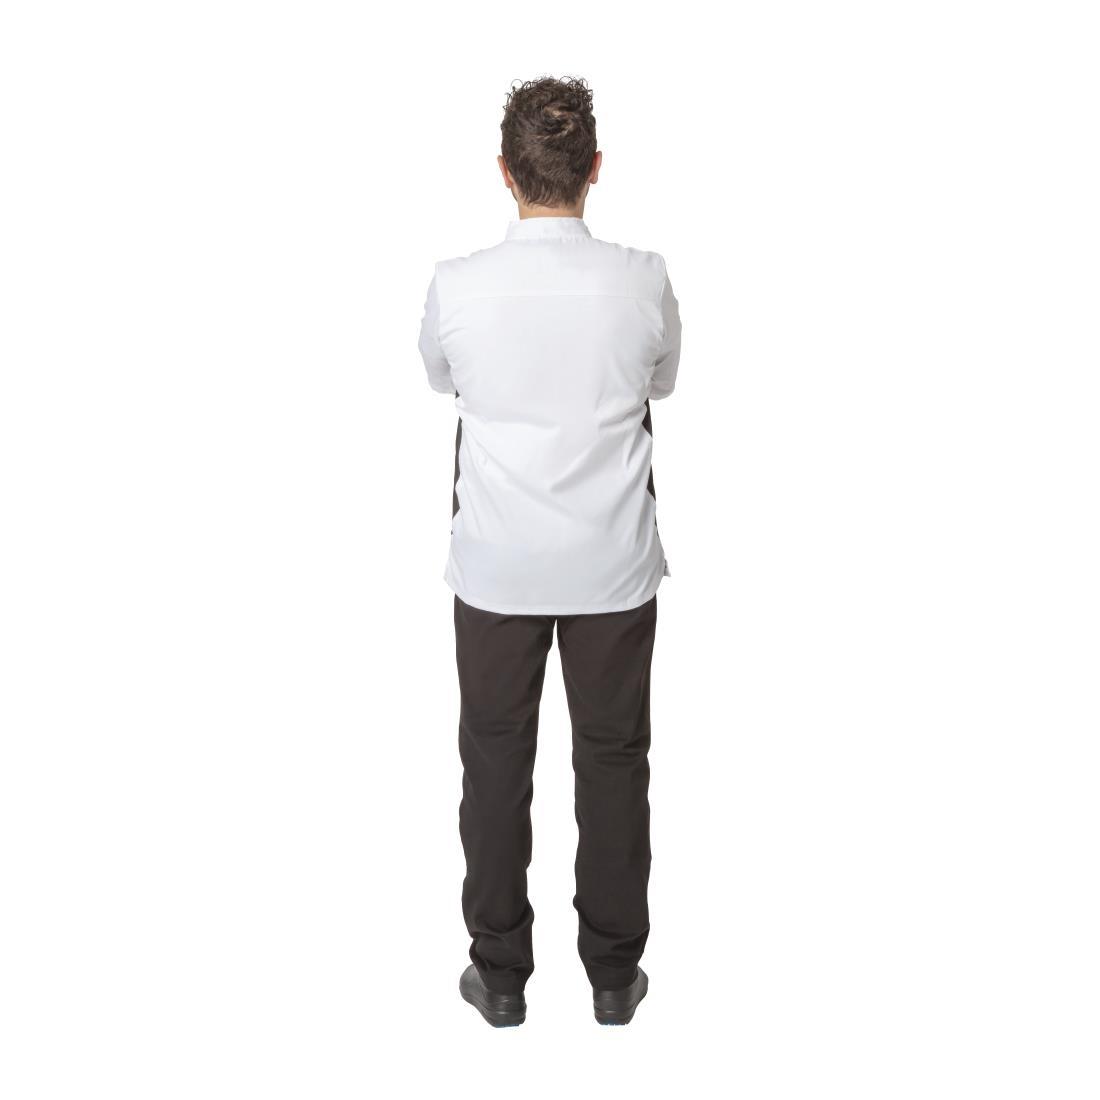 Whites Nevada Unisex Chefs Jacket Short Sleeve Black and White M - A928-M  - 4